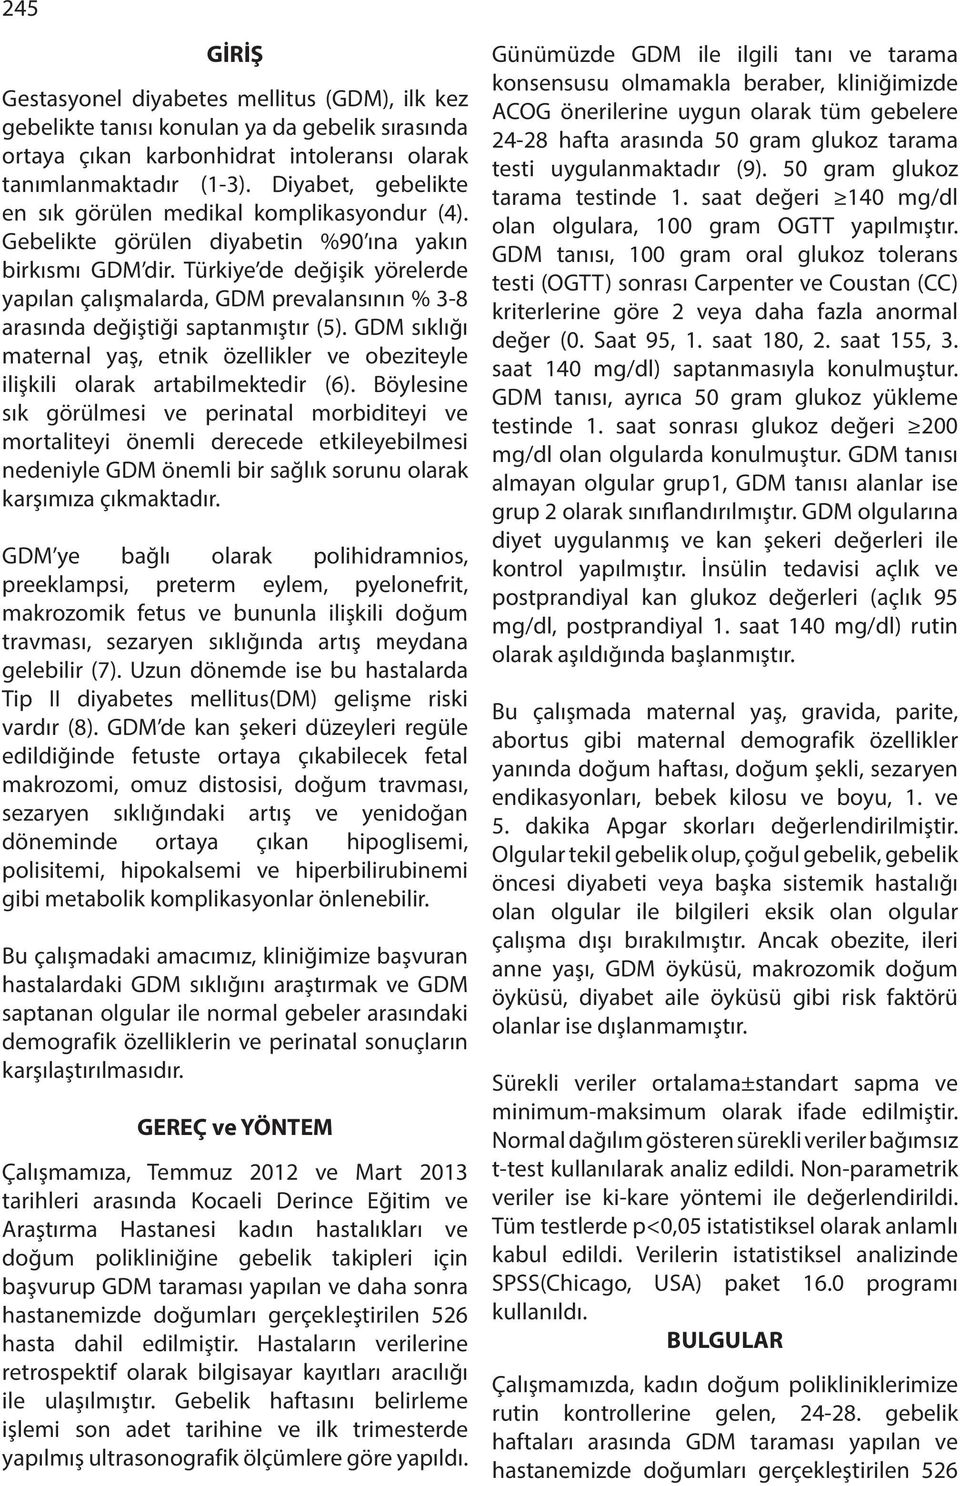 Türkiye de değişik yörelerde yapılan çalışmalarda, GDM prevalansının % 3-8 arasıa değiştiği saptanmıştır (5).